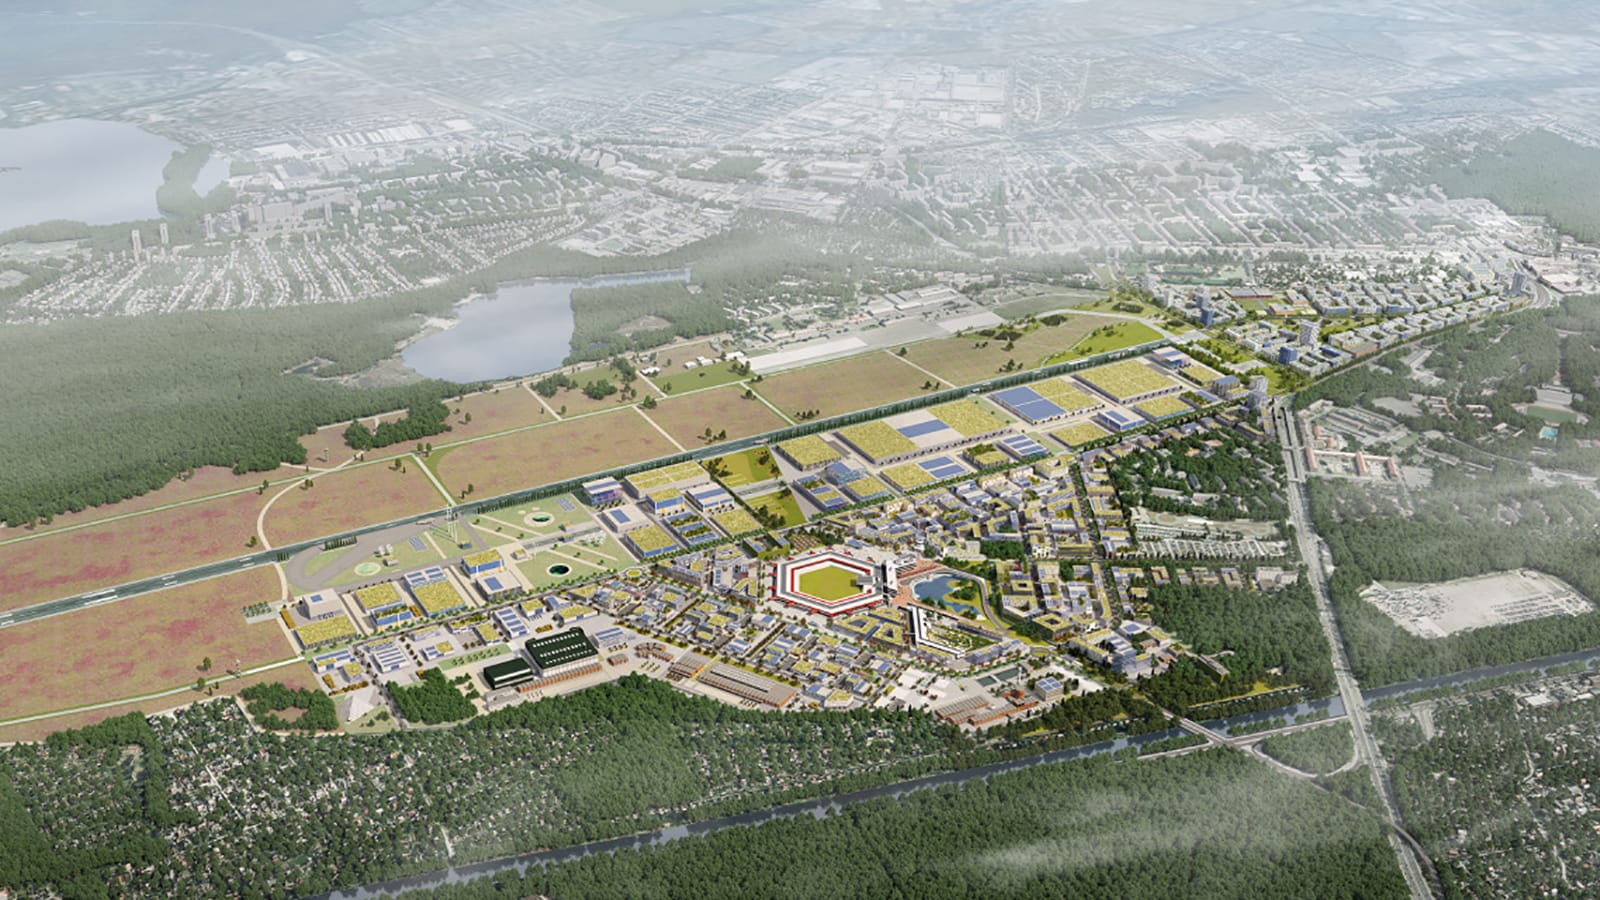 يخطط مشروع طموح قيمته 8 مليارات دولار تحويل مطار ألماني إلى مدينة بيئية